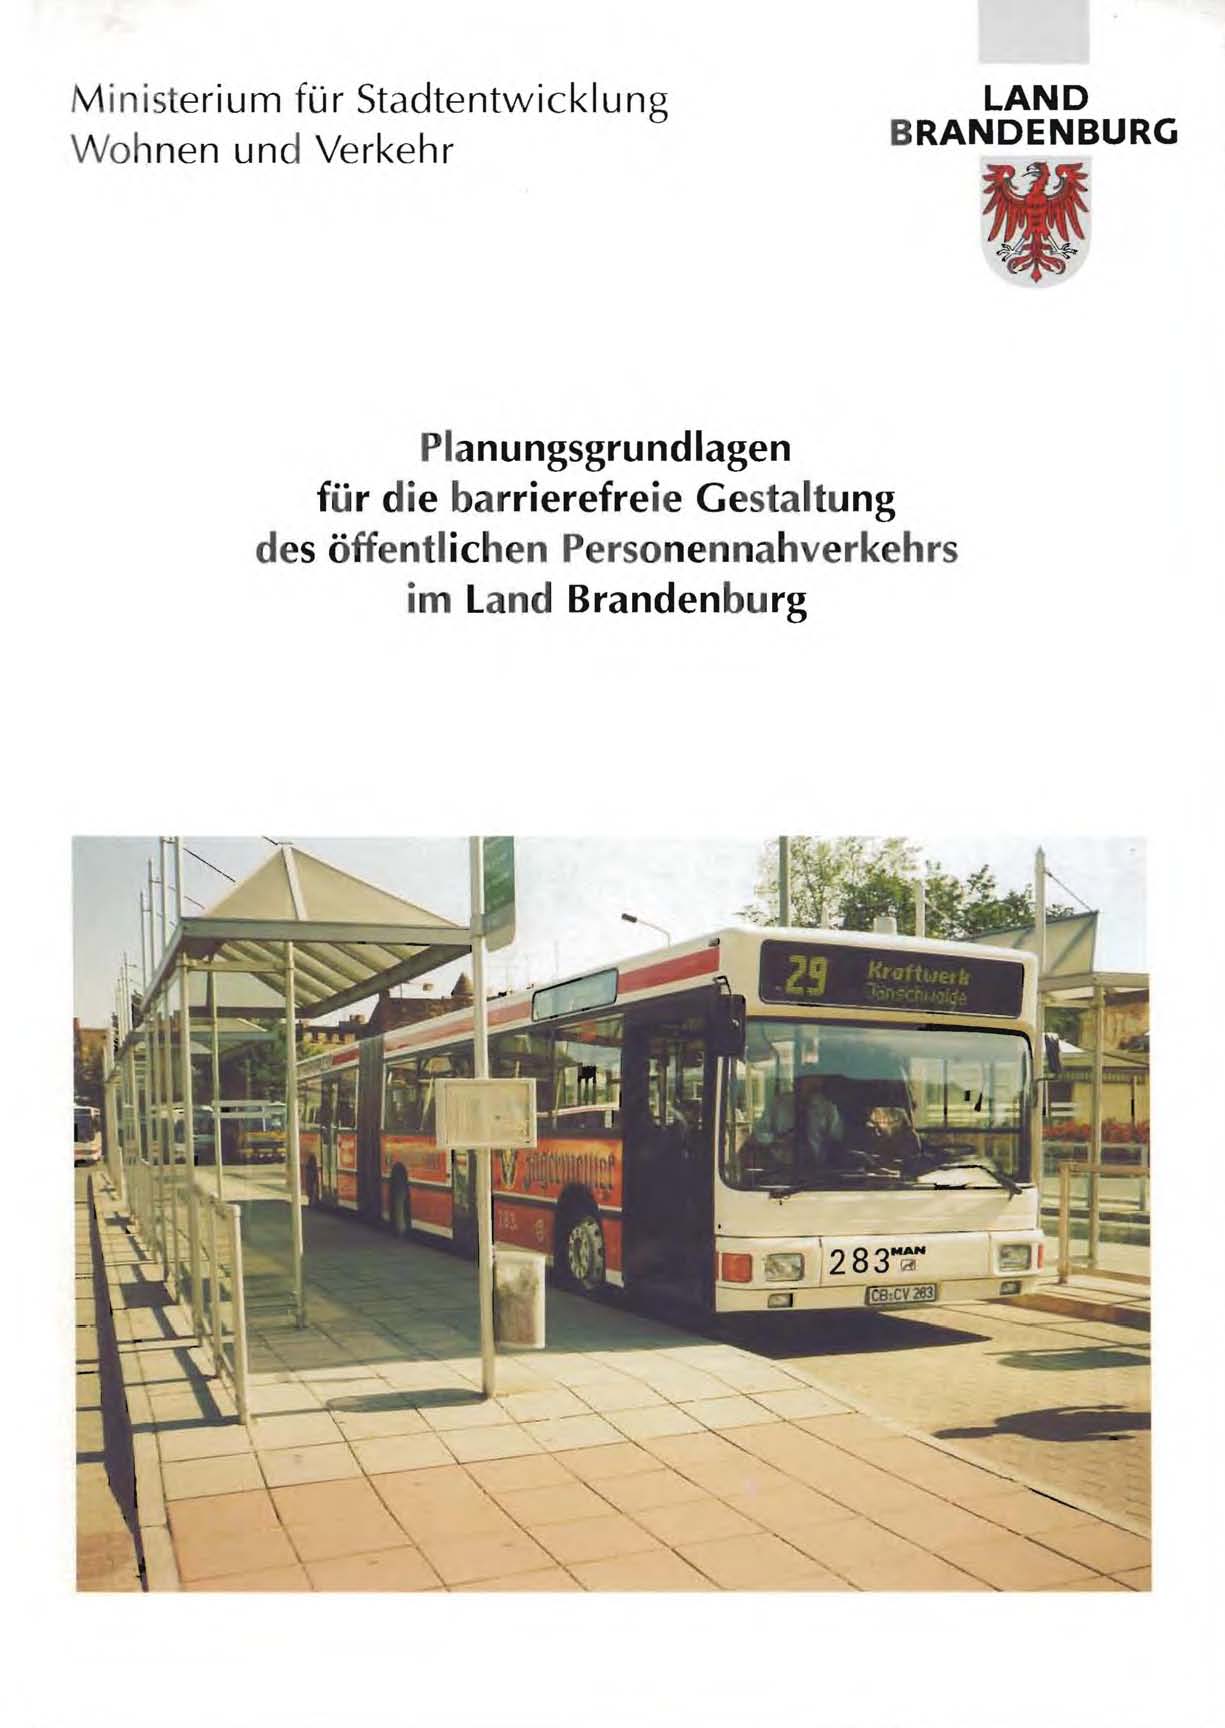 Planungsgrundlagen für die barrierefreie Gestaltung des öffentlichen Personennahverkehrs im Land Brandenburg